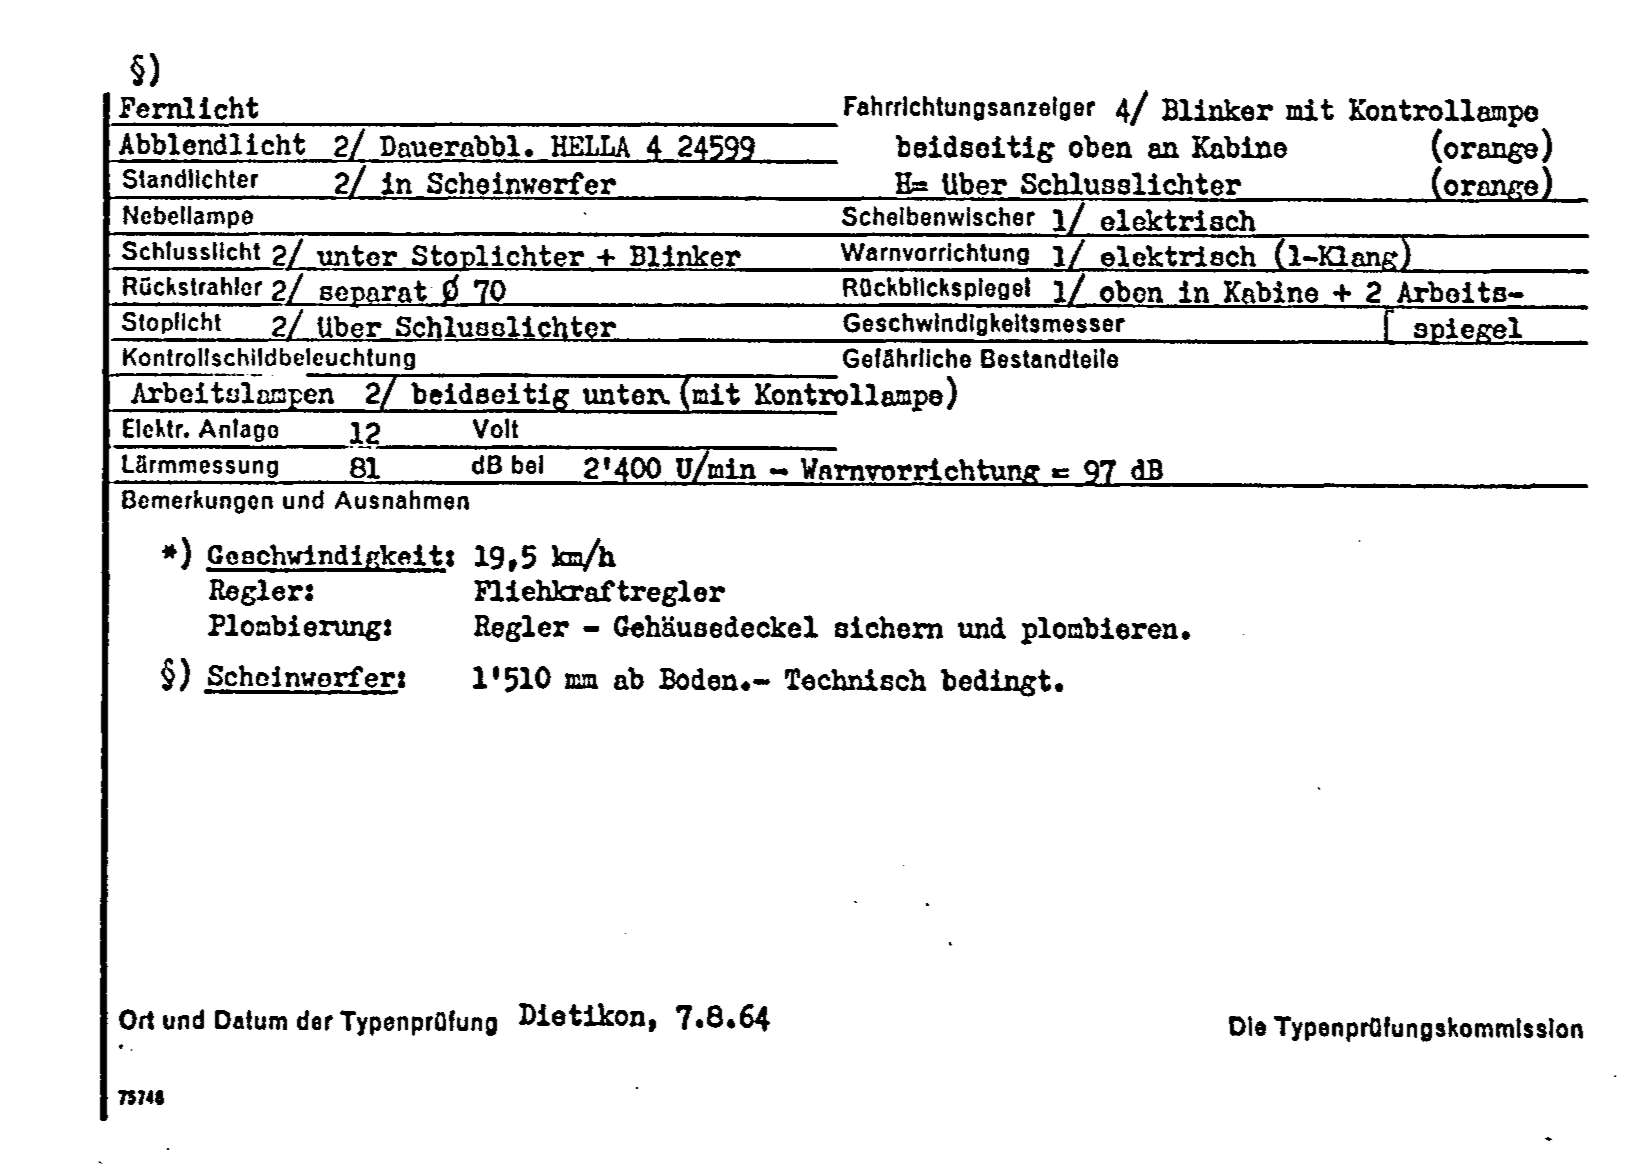 Swiss Certificate of Conformity 4726 German Page 2 (TG.DE.4726.2.png)